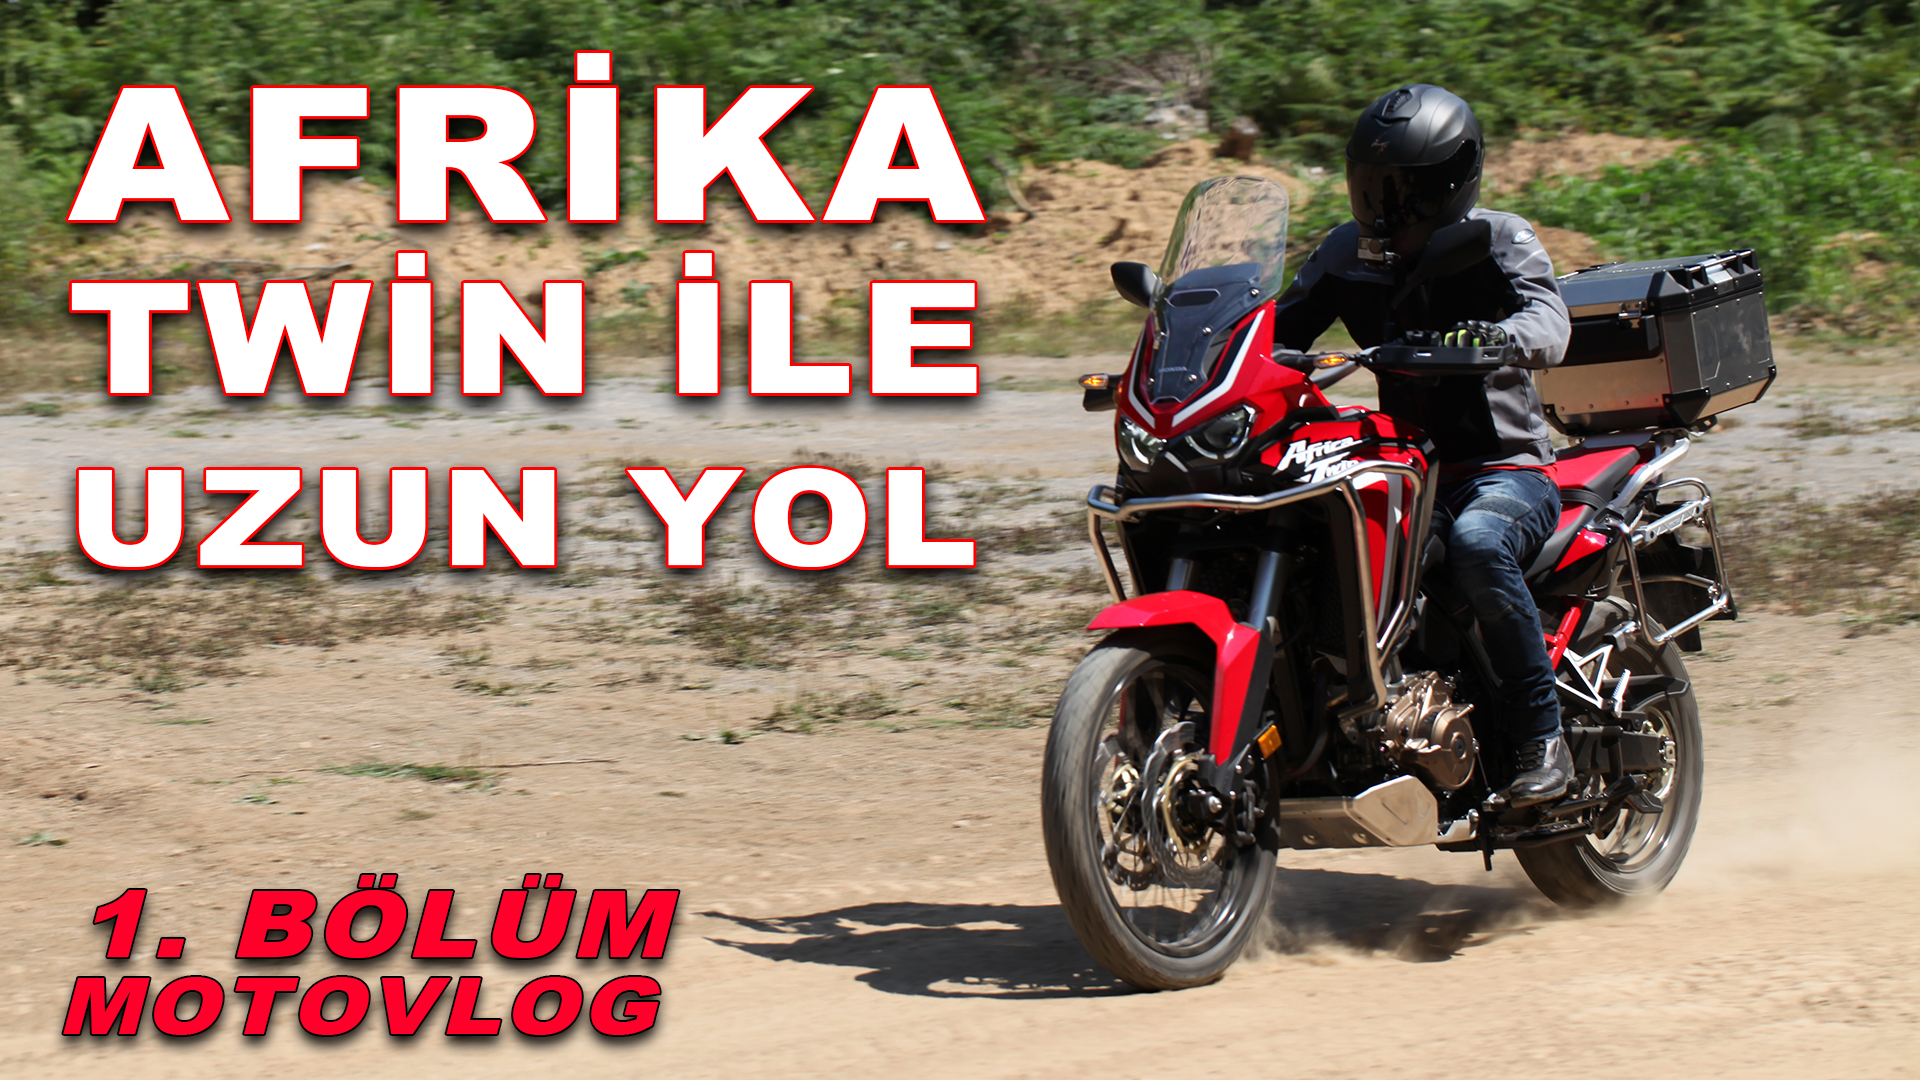 Honda Afrika Twin ile uzun yol | Ankara Zonguldak Motovlog | Bölüm 1